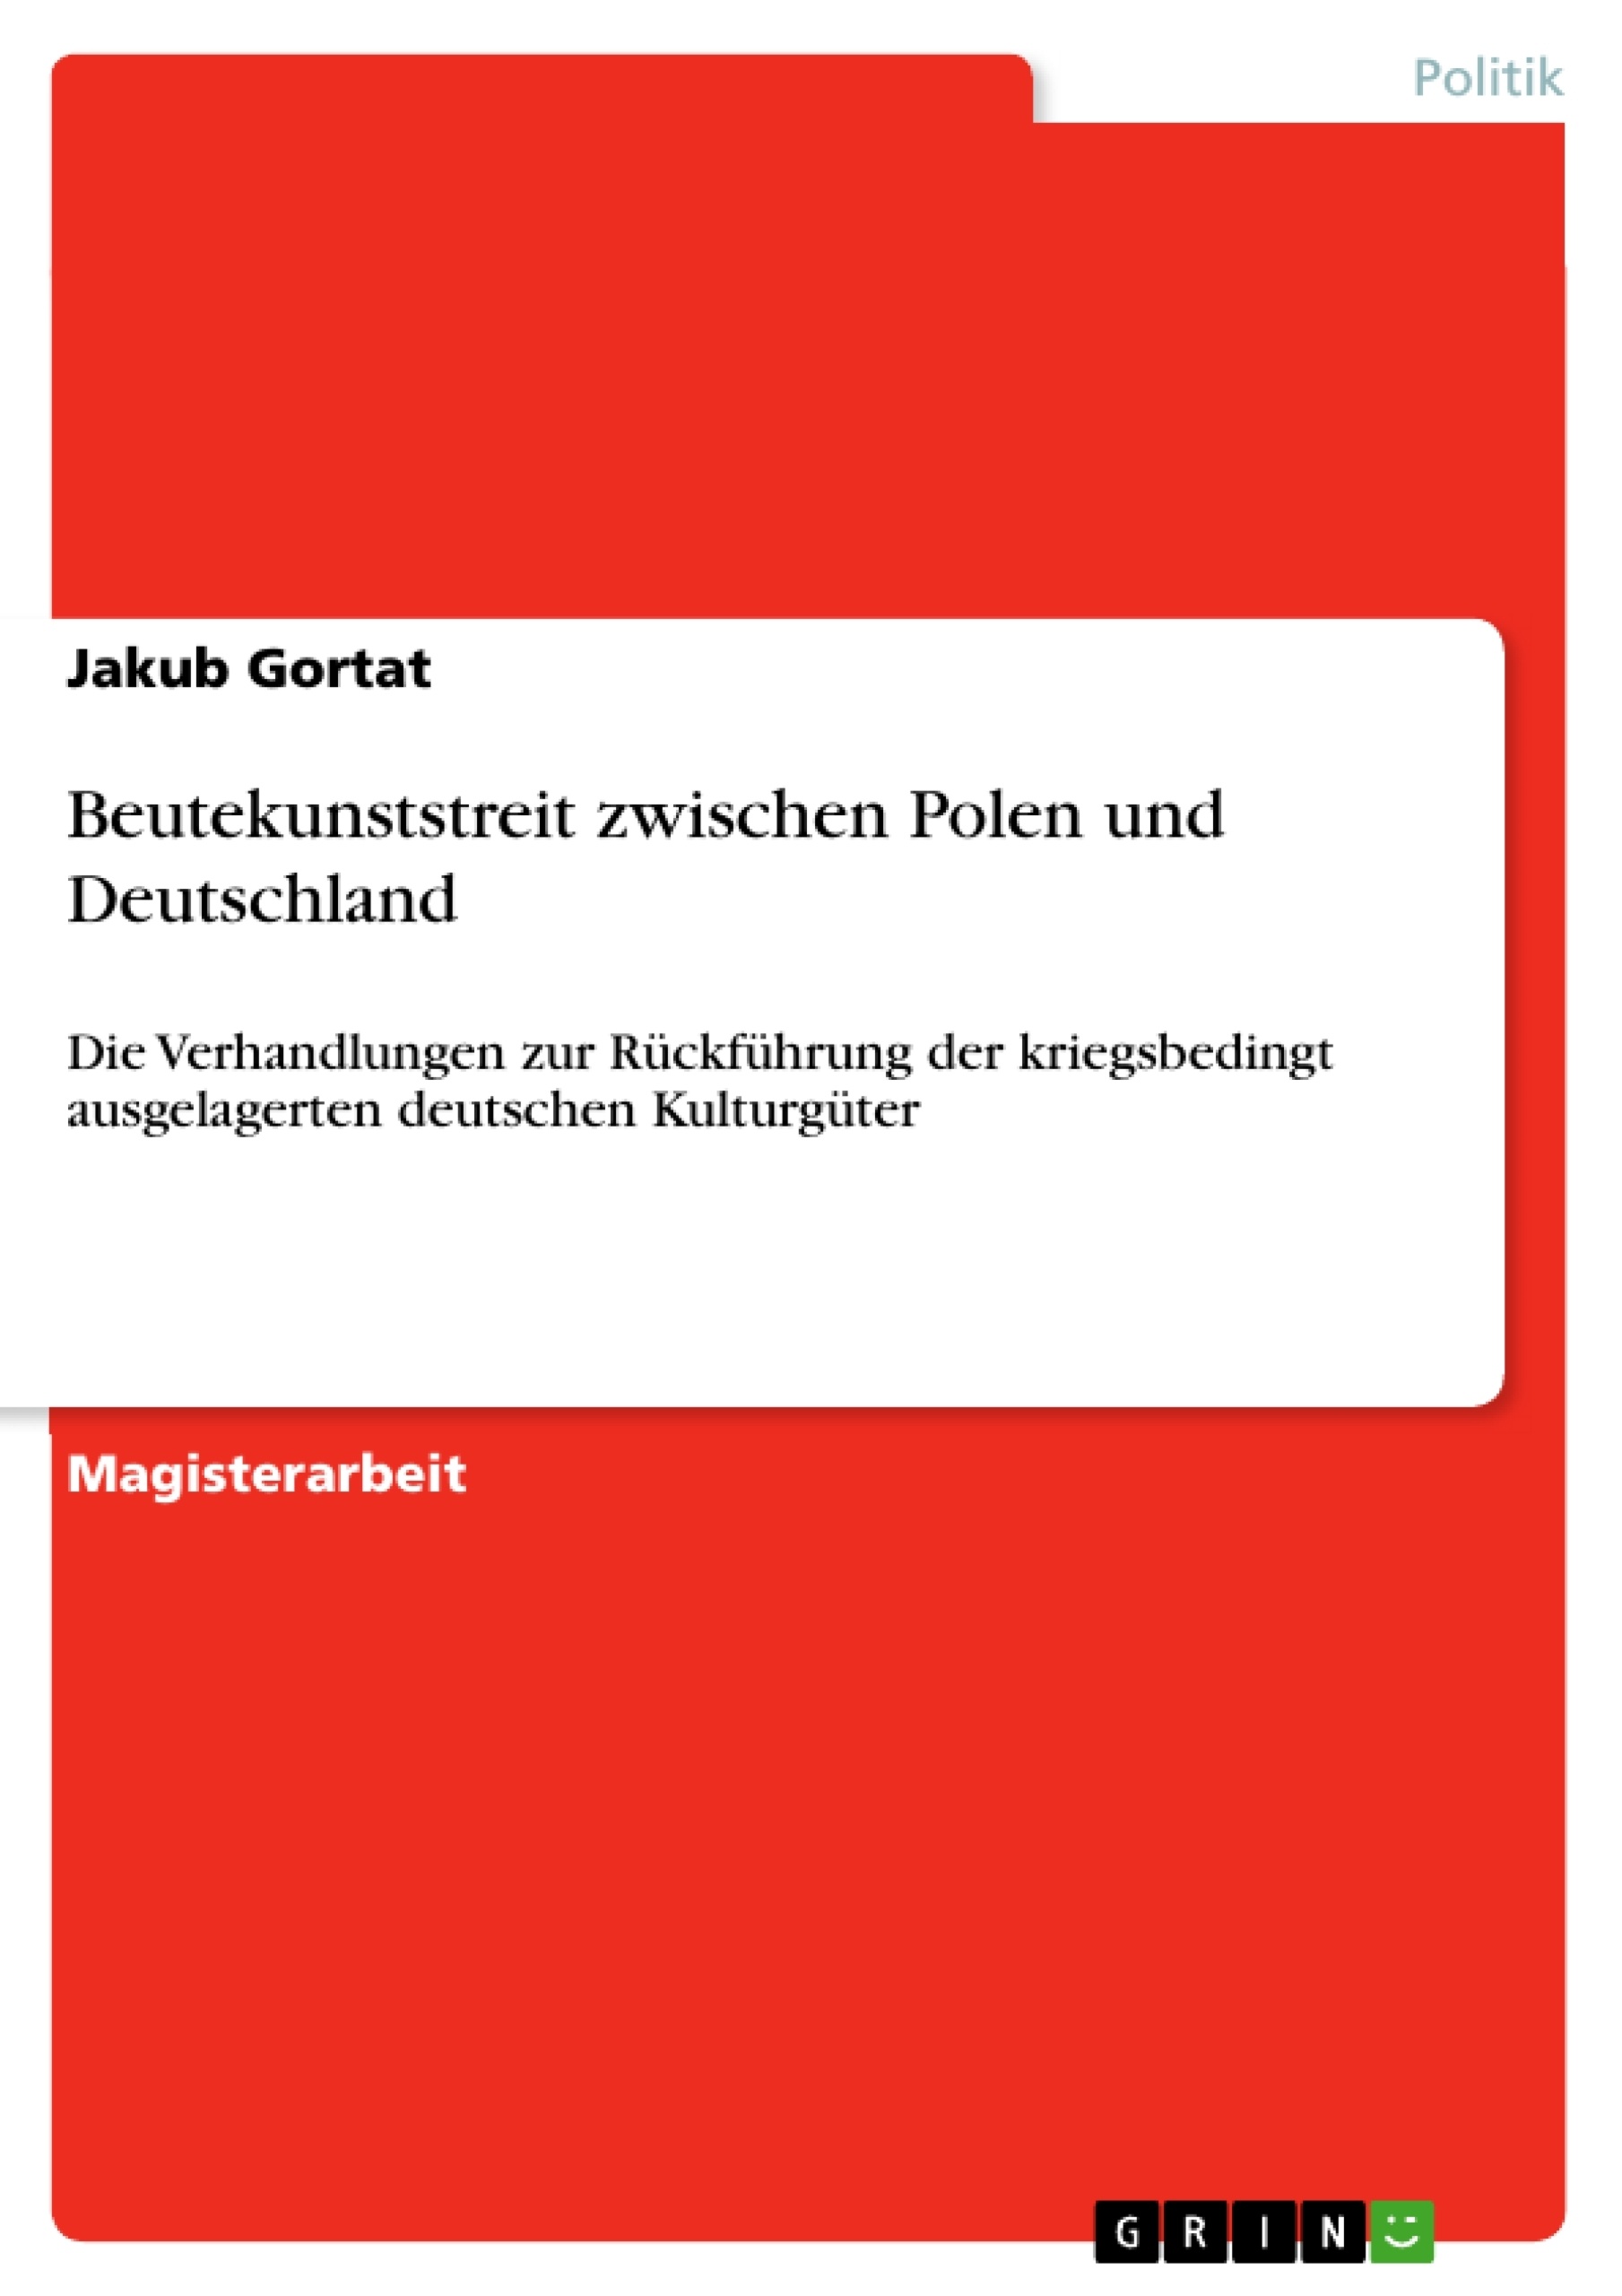 Titre: Beutekunststreit zwischen Polen und Deutschland